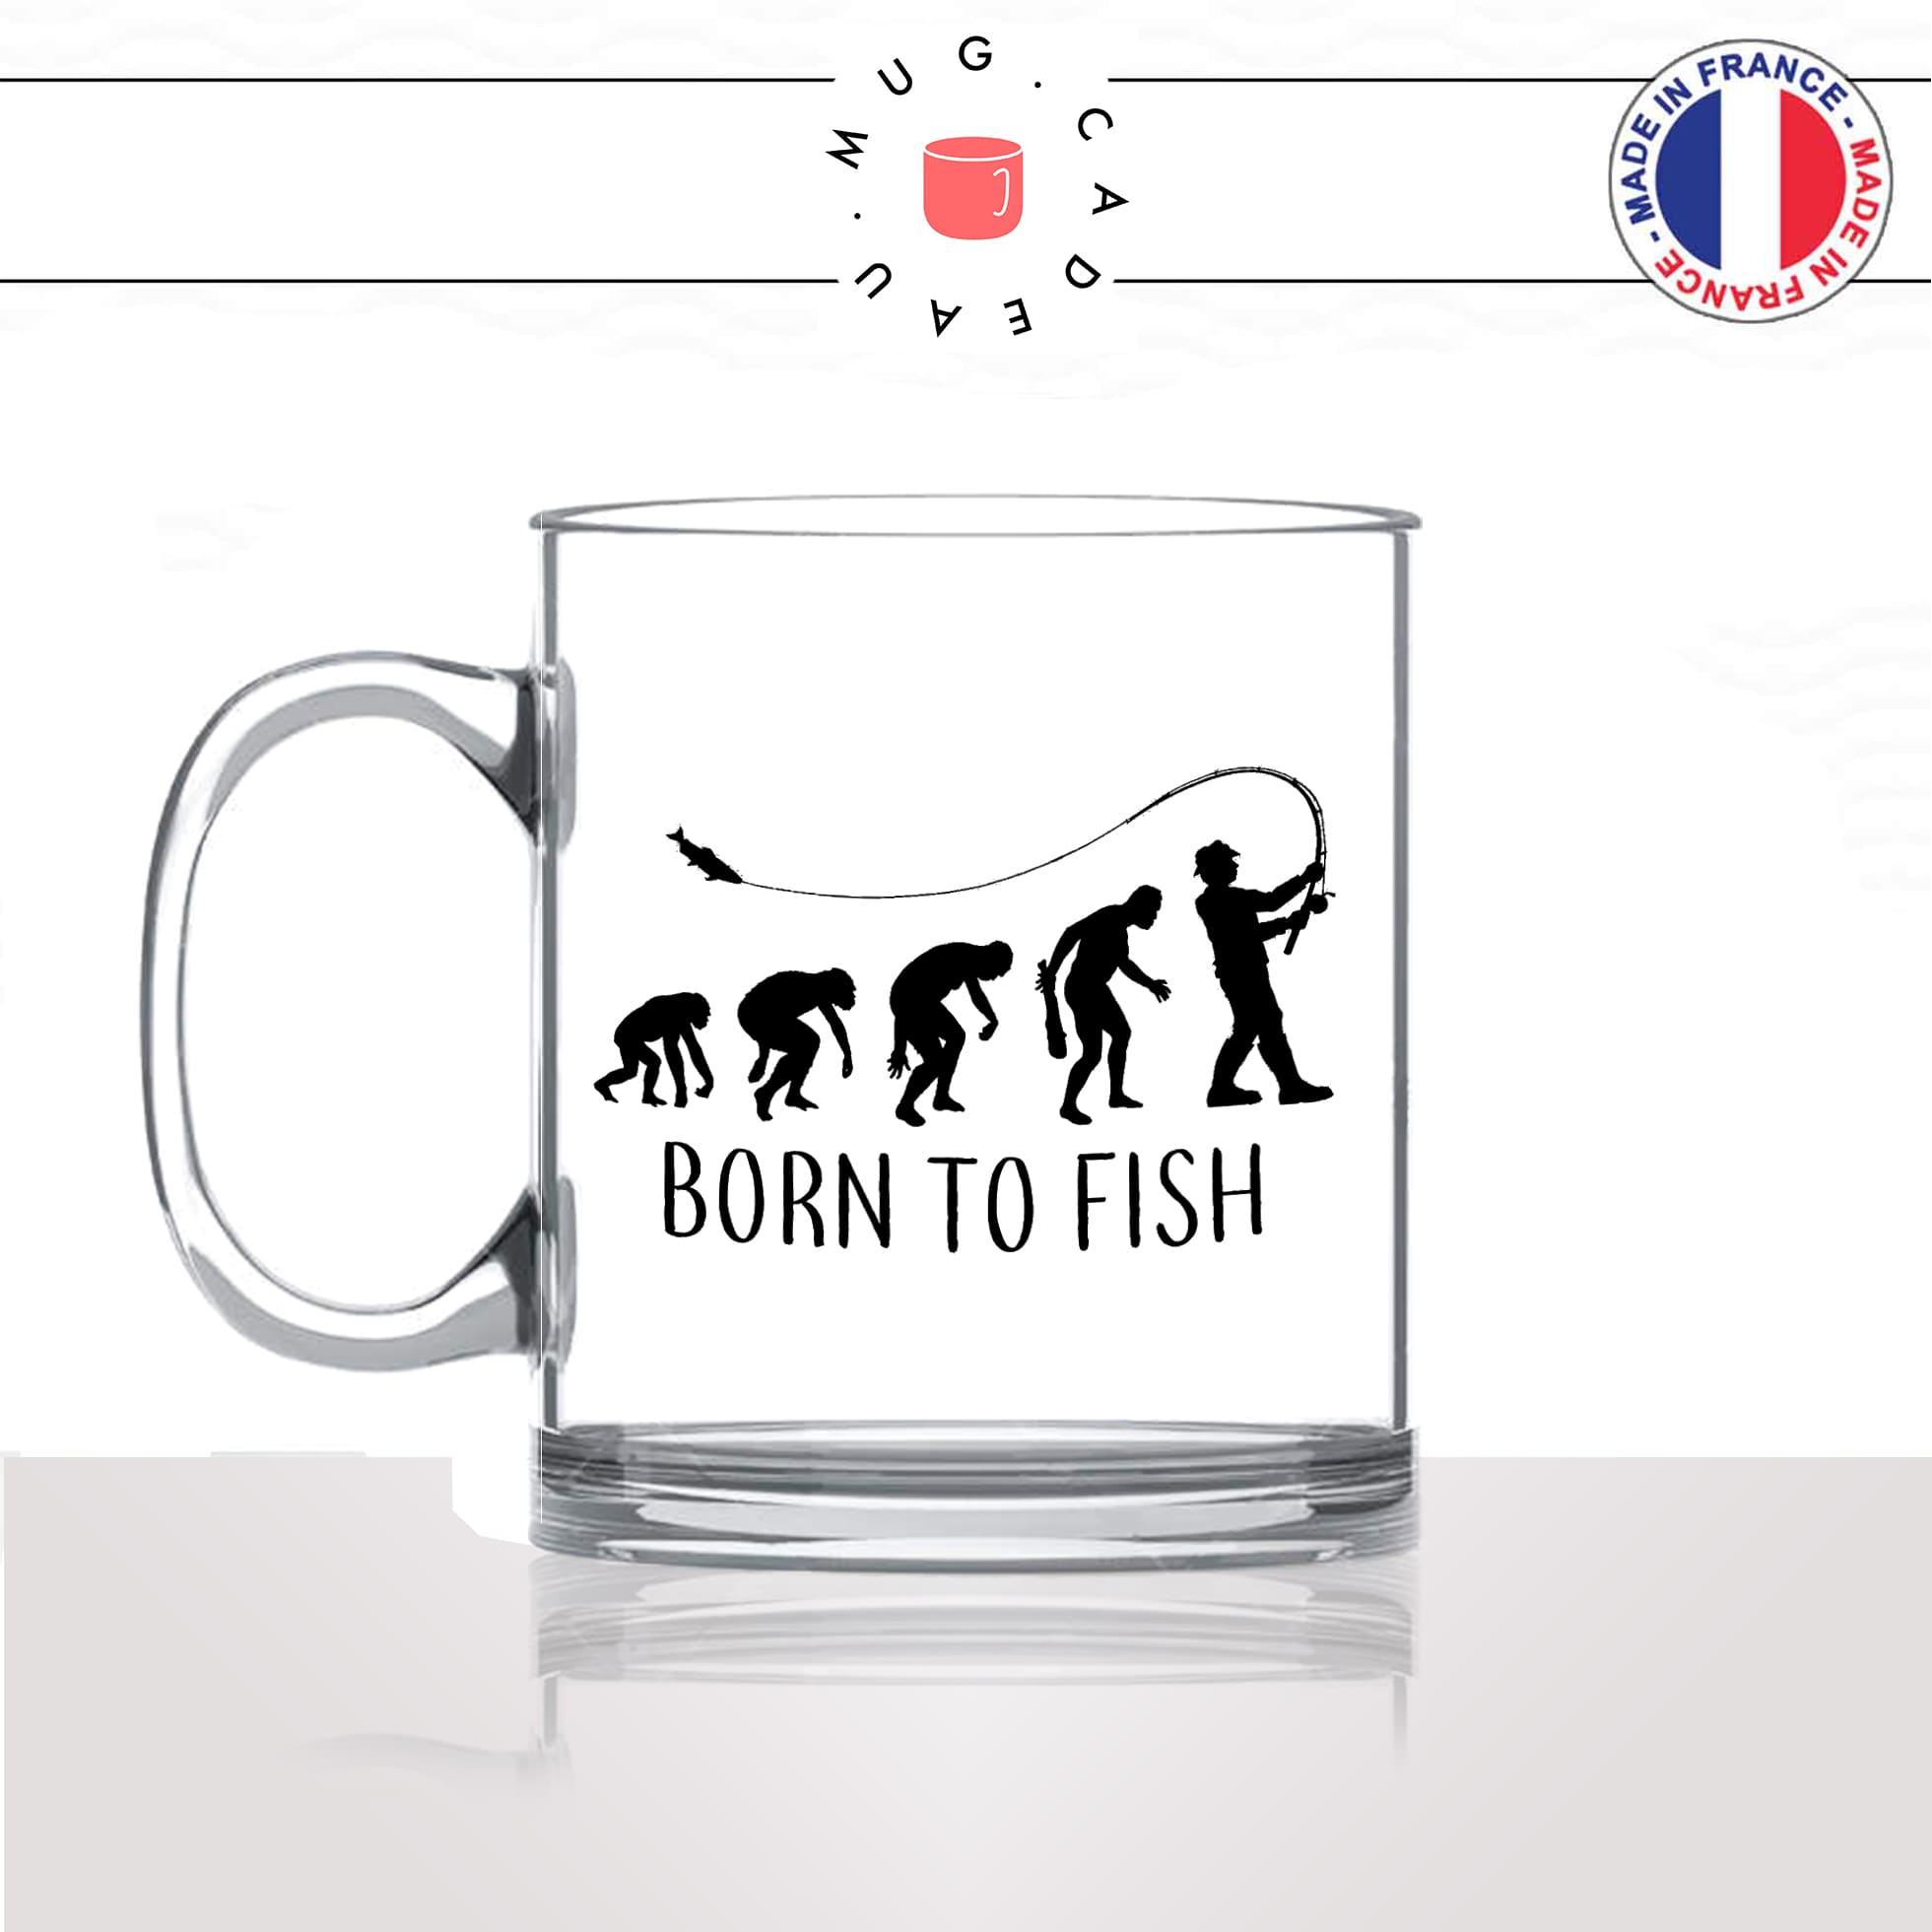 mug-tasse-en-verre-transparent-glass-born-to-fish-evolution-humaine-singe-peche-pecheur-poisson-humour-idée-cadeau-fun-cool-café-thé